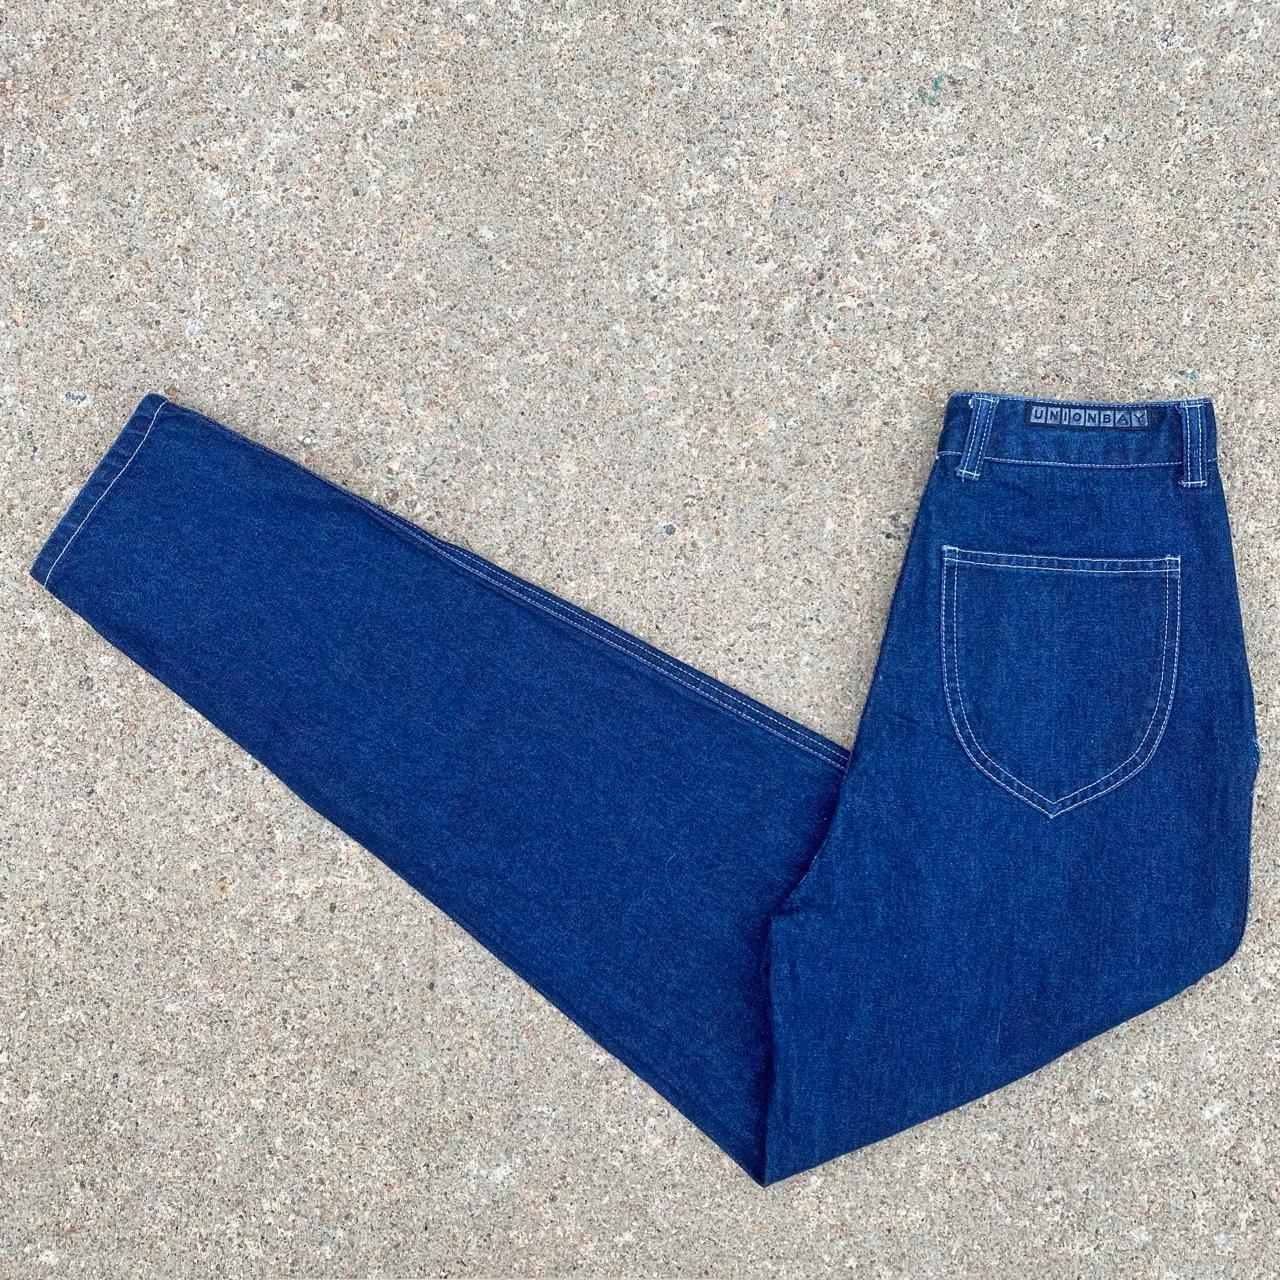 Union Bay Women's Blue Jeans (3)